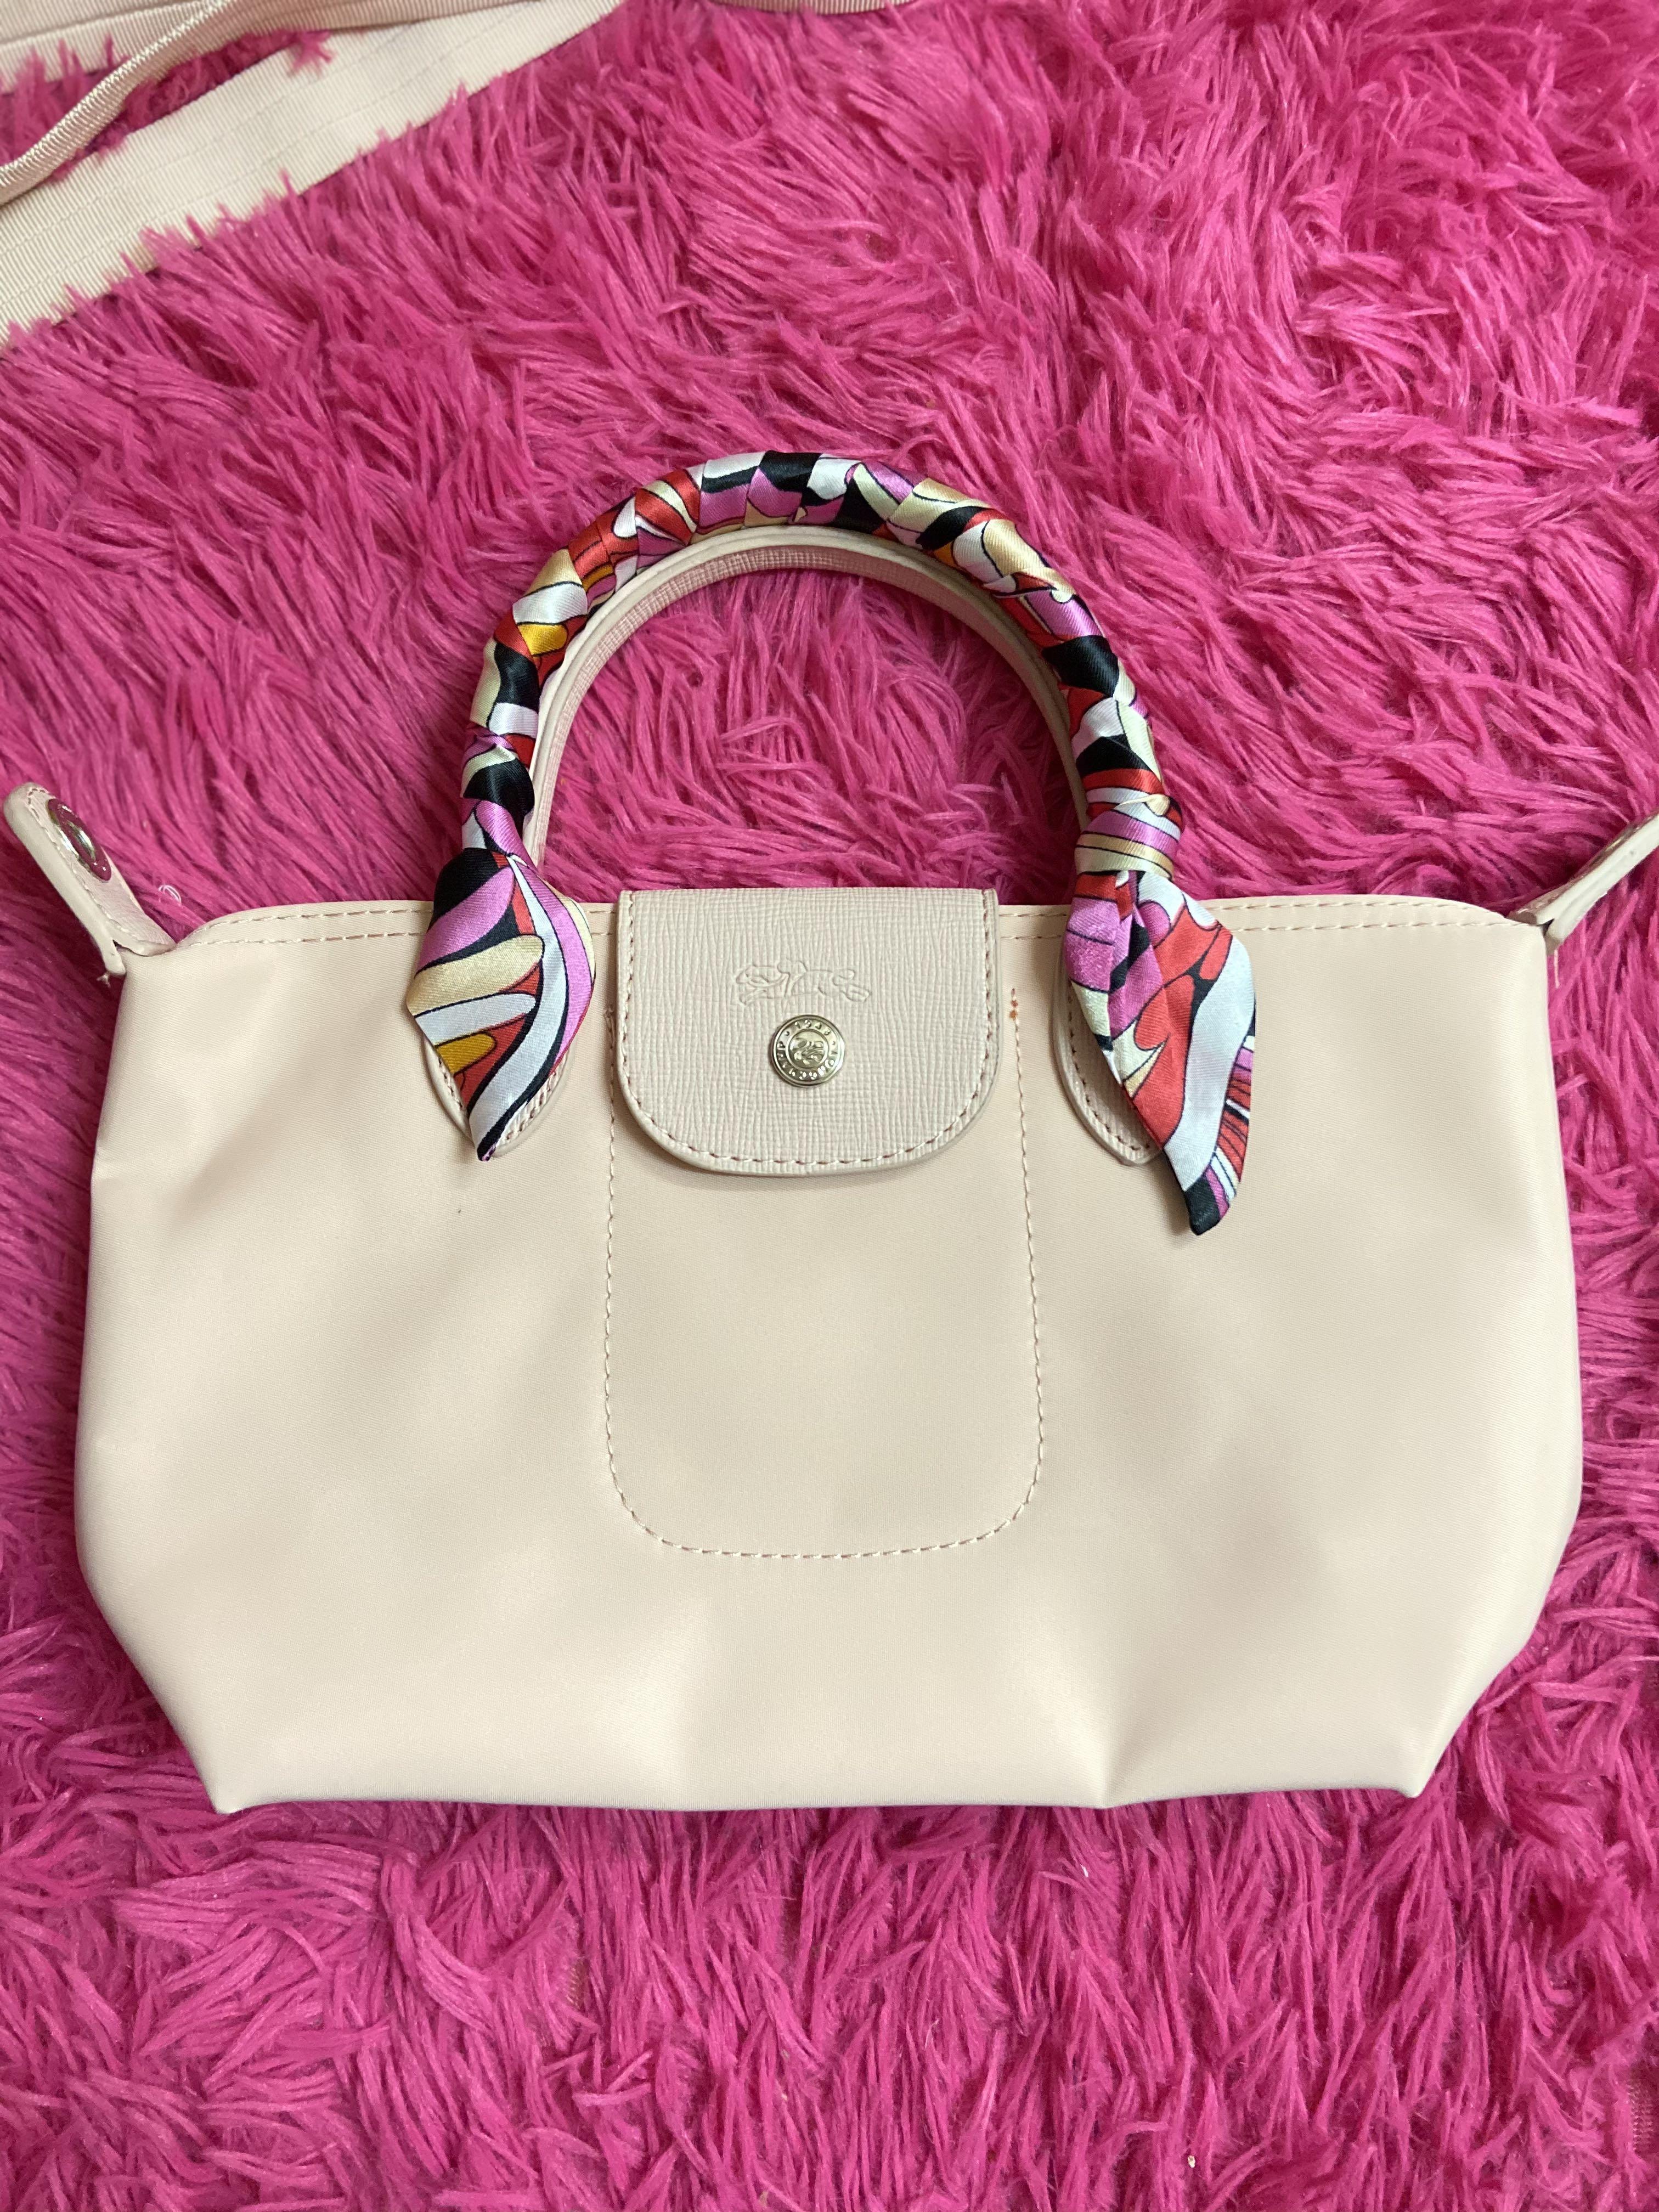 longchamp handbag small pink f 1601529252 938d653c progressive